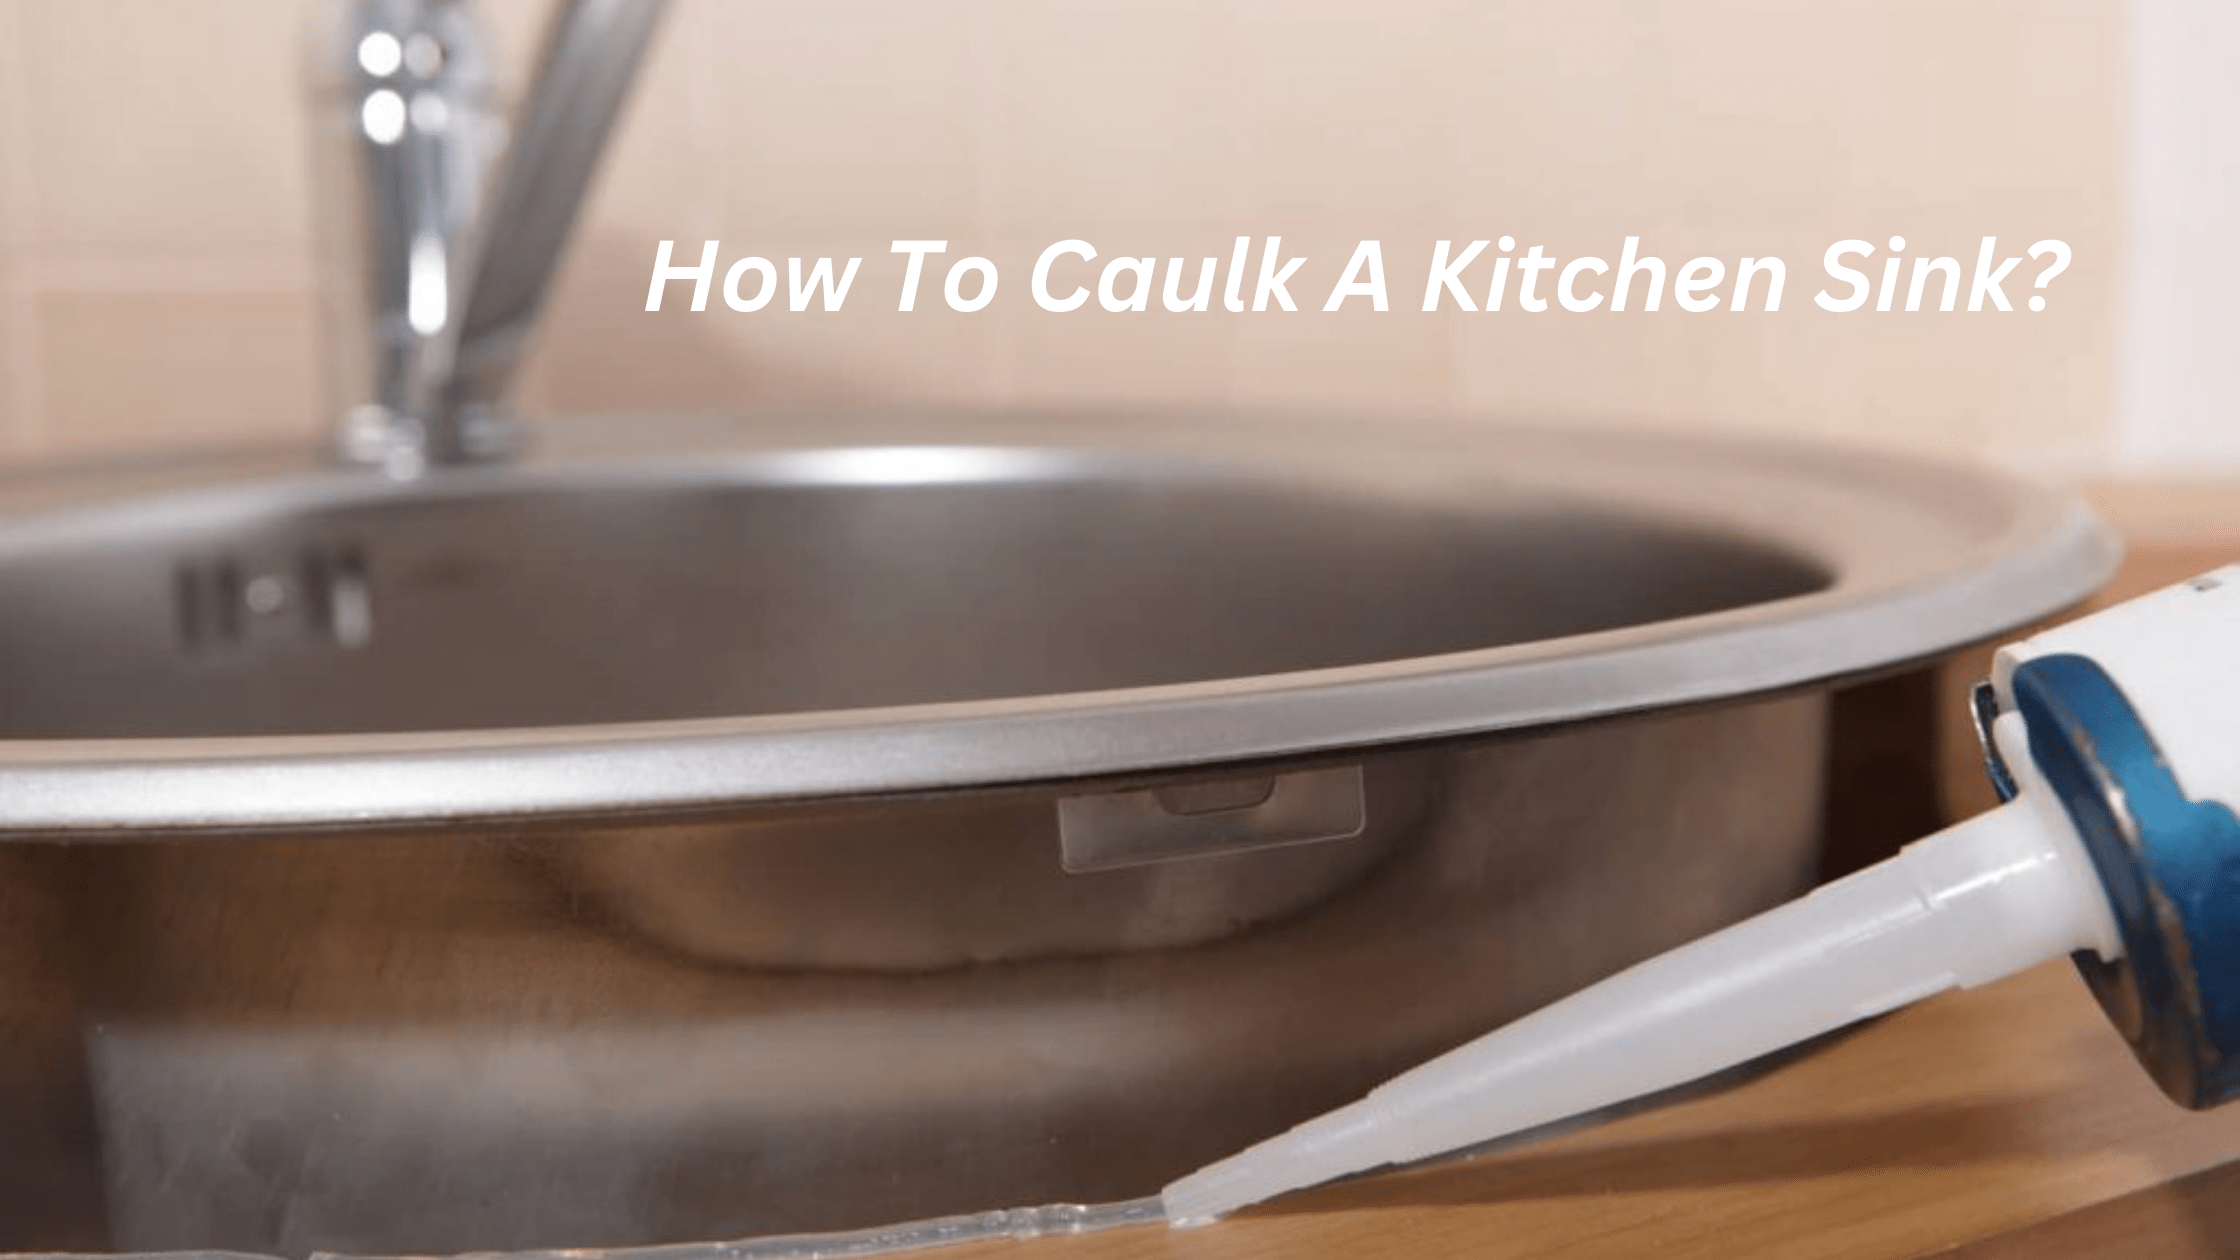 How To Caulk A Kitchen Sink?